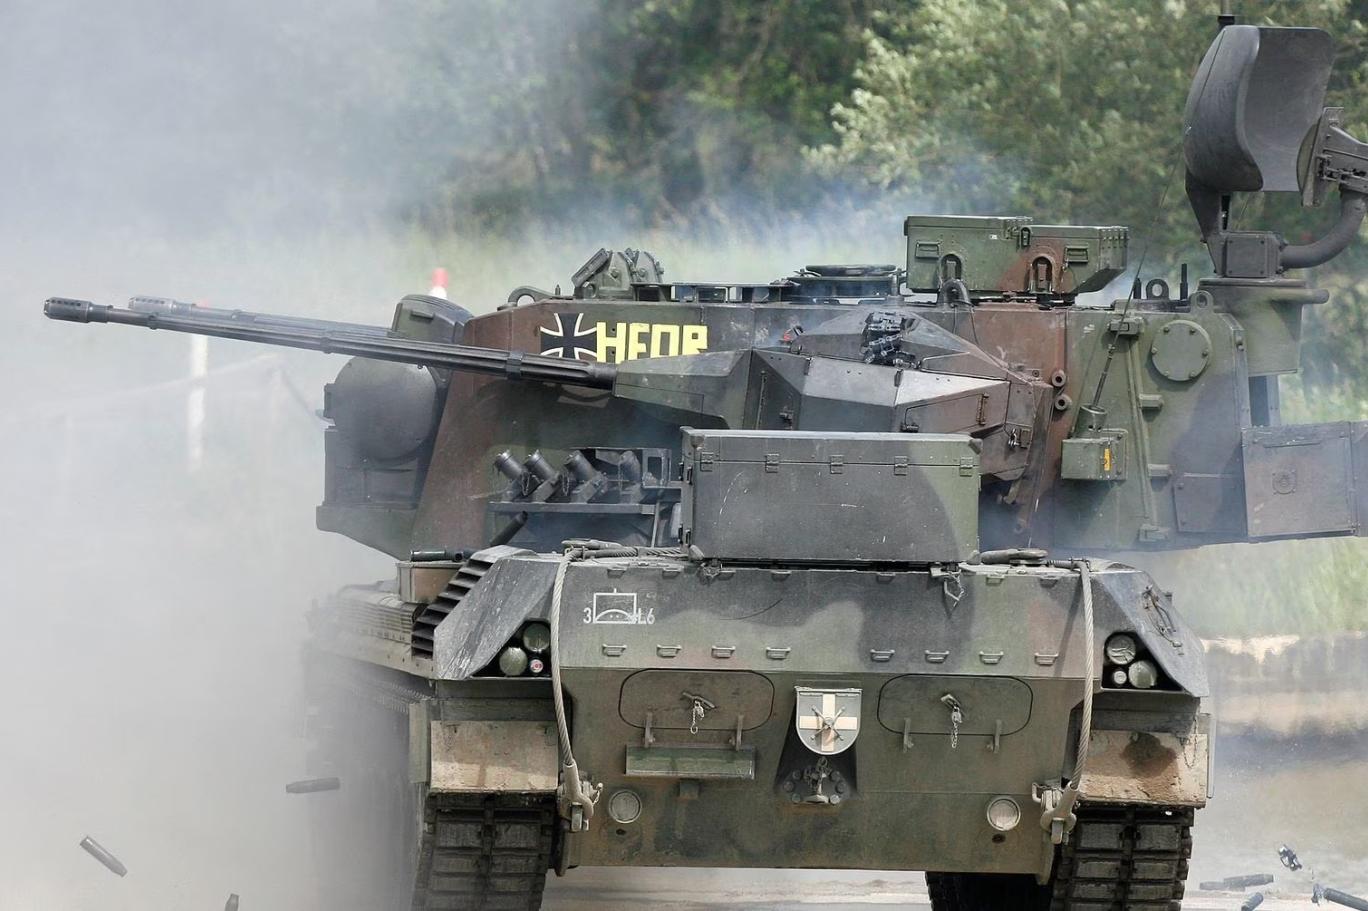 İsviçre yapımı tankların Ukrayna'da görüldüğü iddiası araştırılıyor